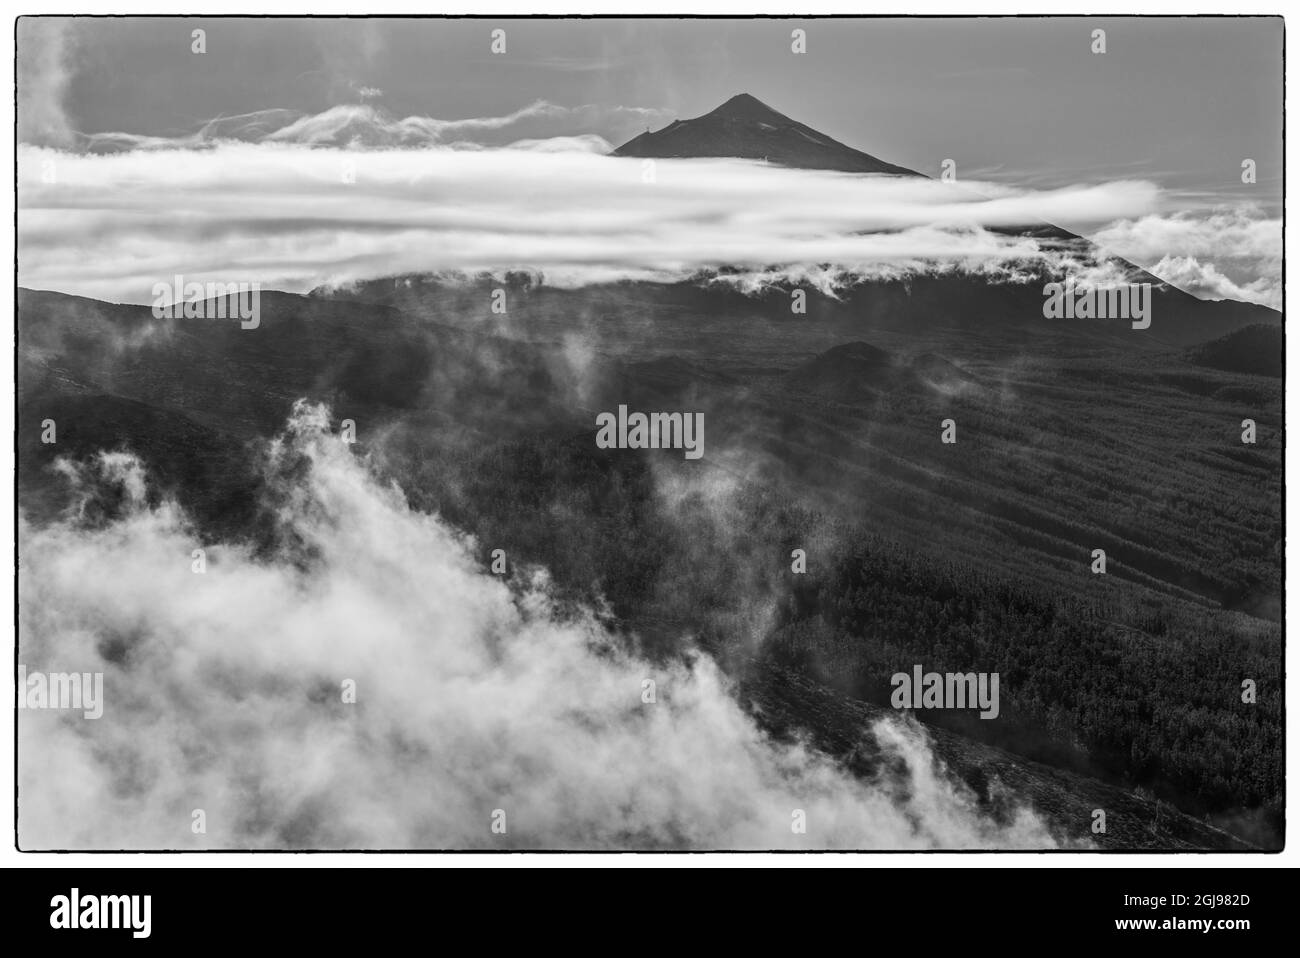 España, Islas Canarias, la isla de Tenerife, el Teide, paisajes de montaña con niebla Foto de stock